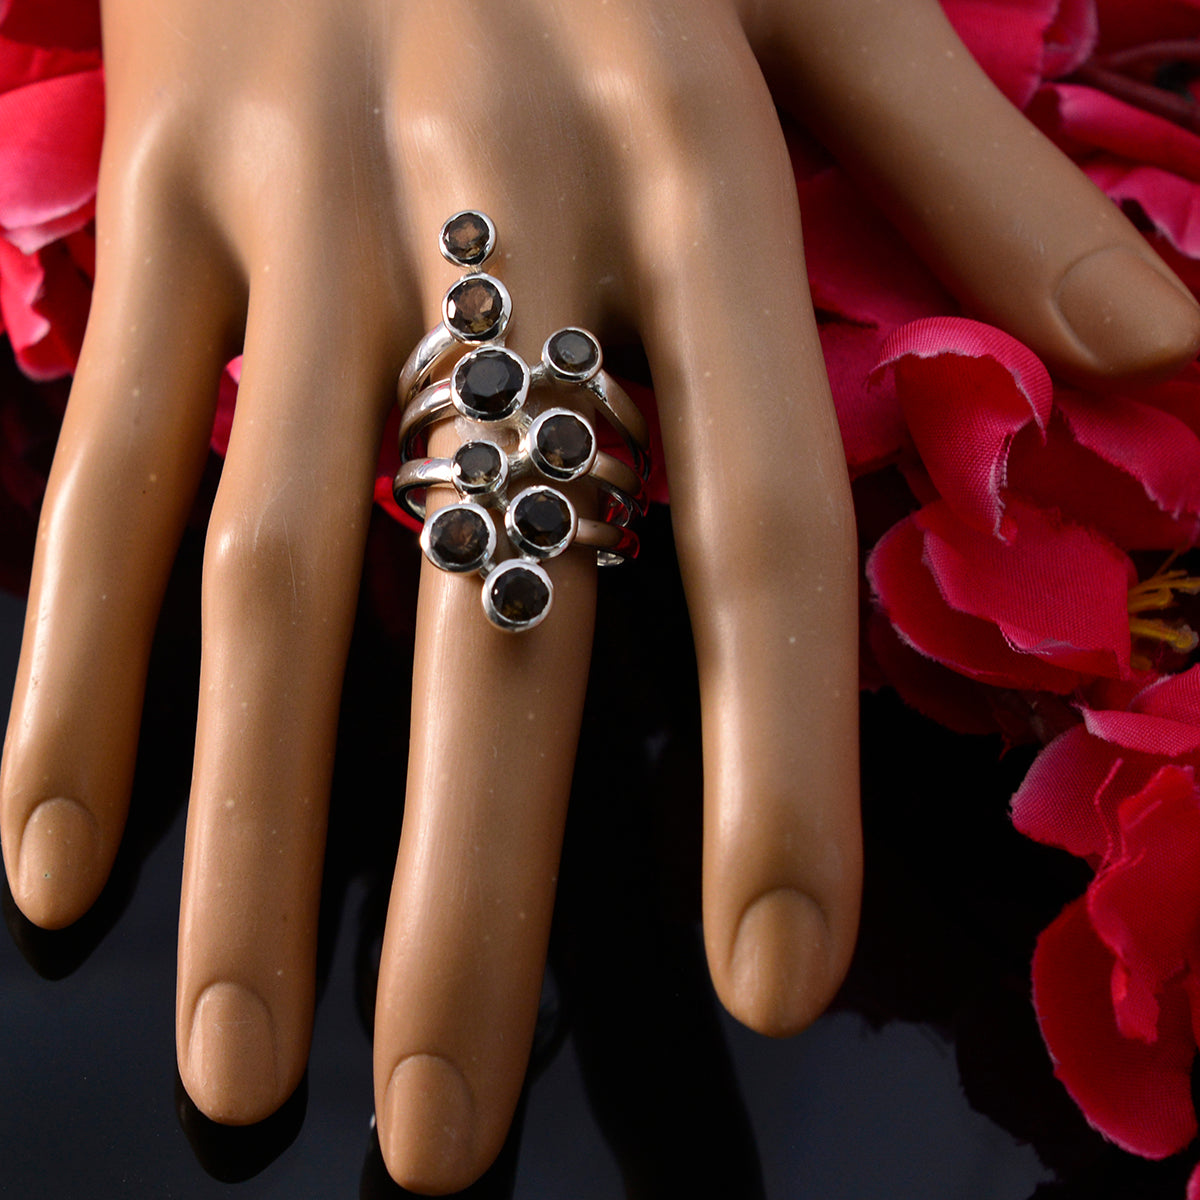 Riyo Hot Gem cuarzo ahumado 925 anillos de plata esterlina joyería de la justicia